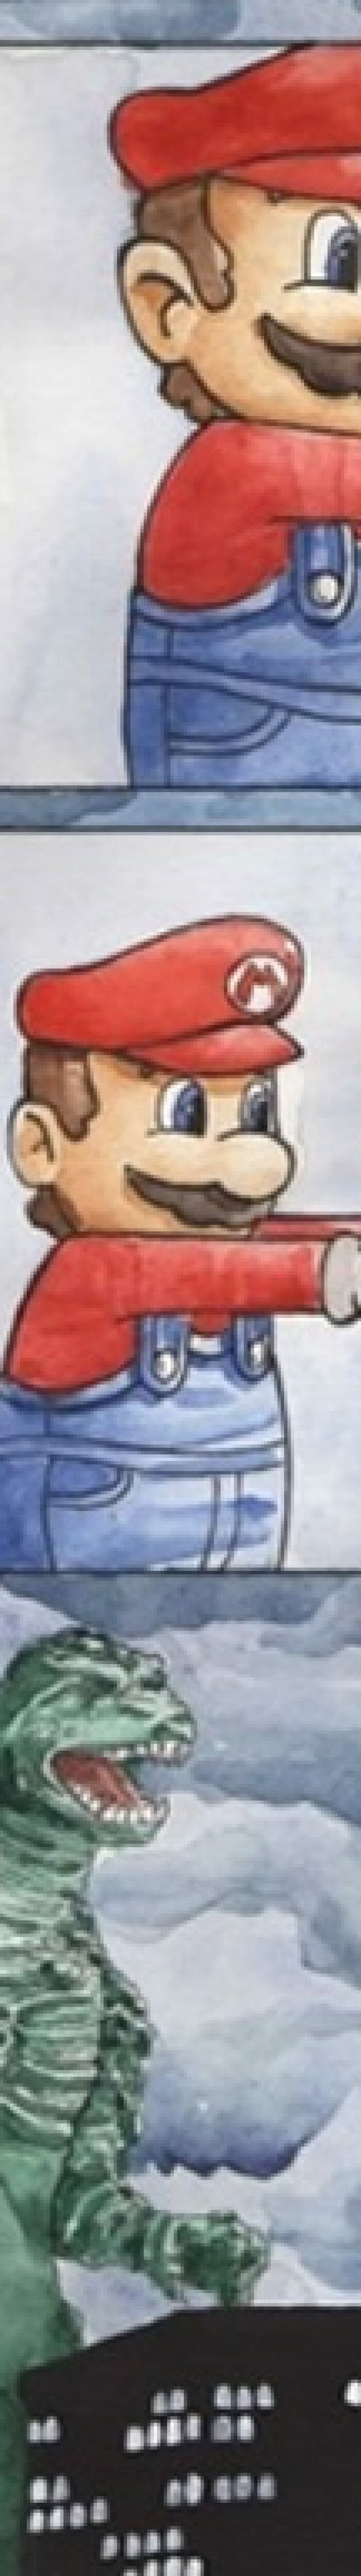 Super Mario em: Compartilhar o lanche com os amigos nem sempre é uma boa ideia